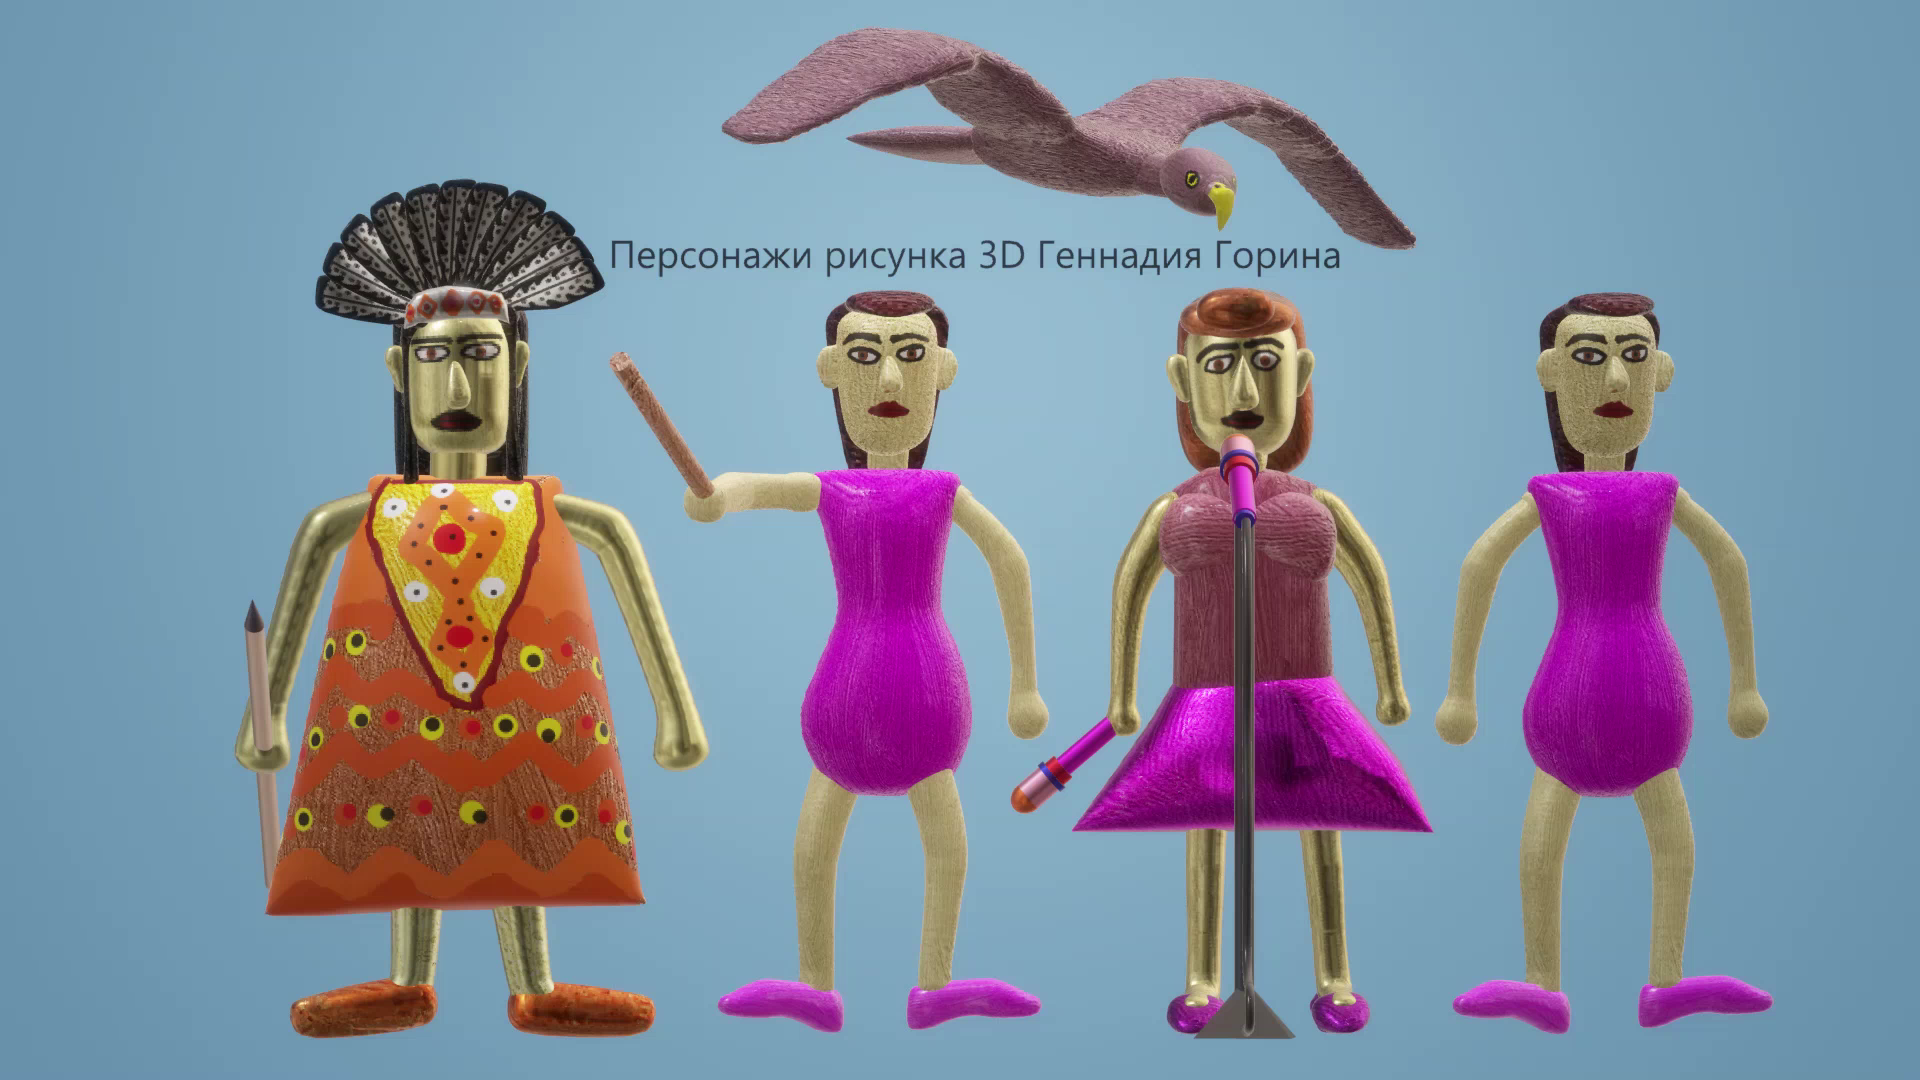 Персонажи рисунка 3D Геннадия Горина